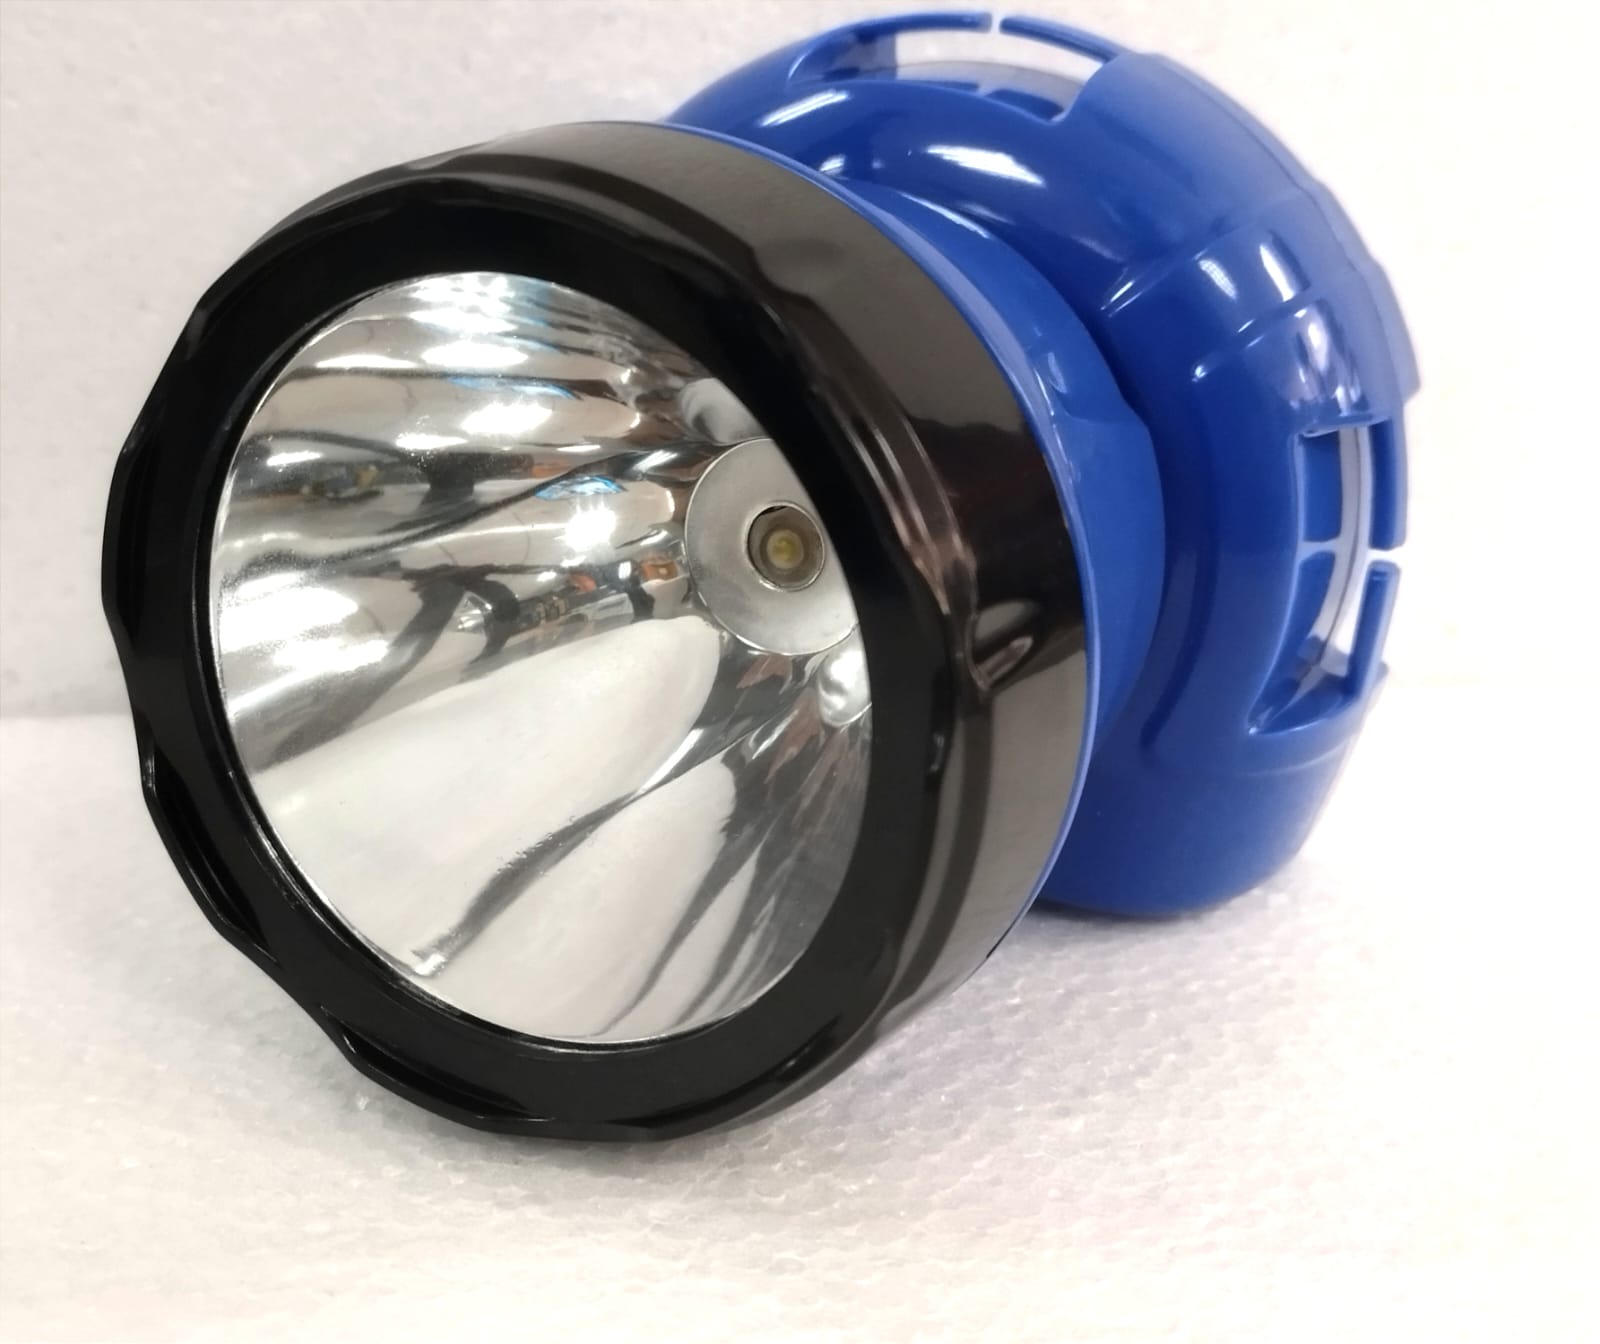 Faros LED, faros LED Linternas frontales impermeables de alta potencia Luz frontal  LED brillante Tecnología innovadora Jadeshay A